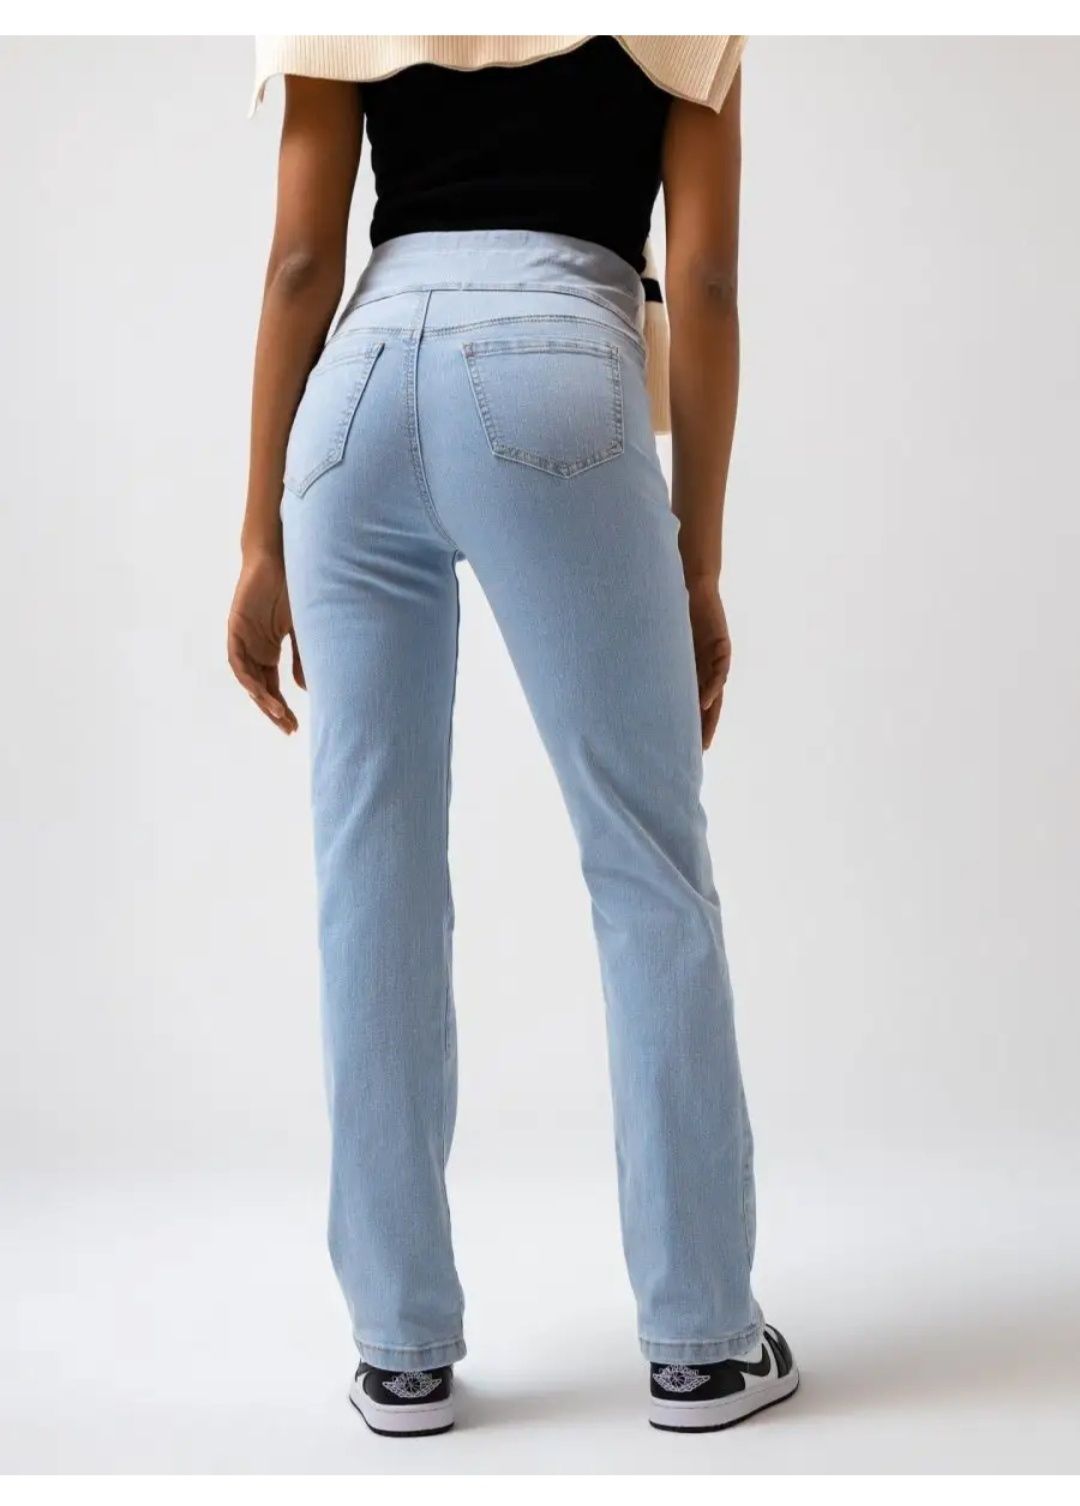 Продам джинсы для беременных 48рр